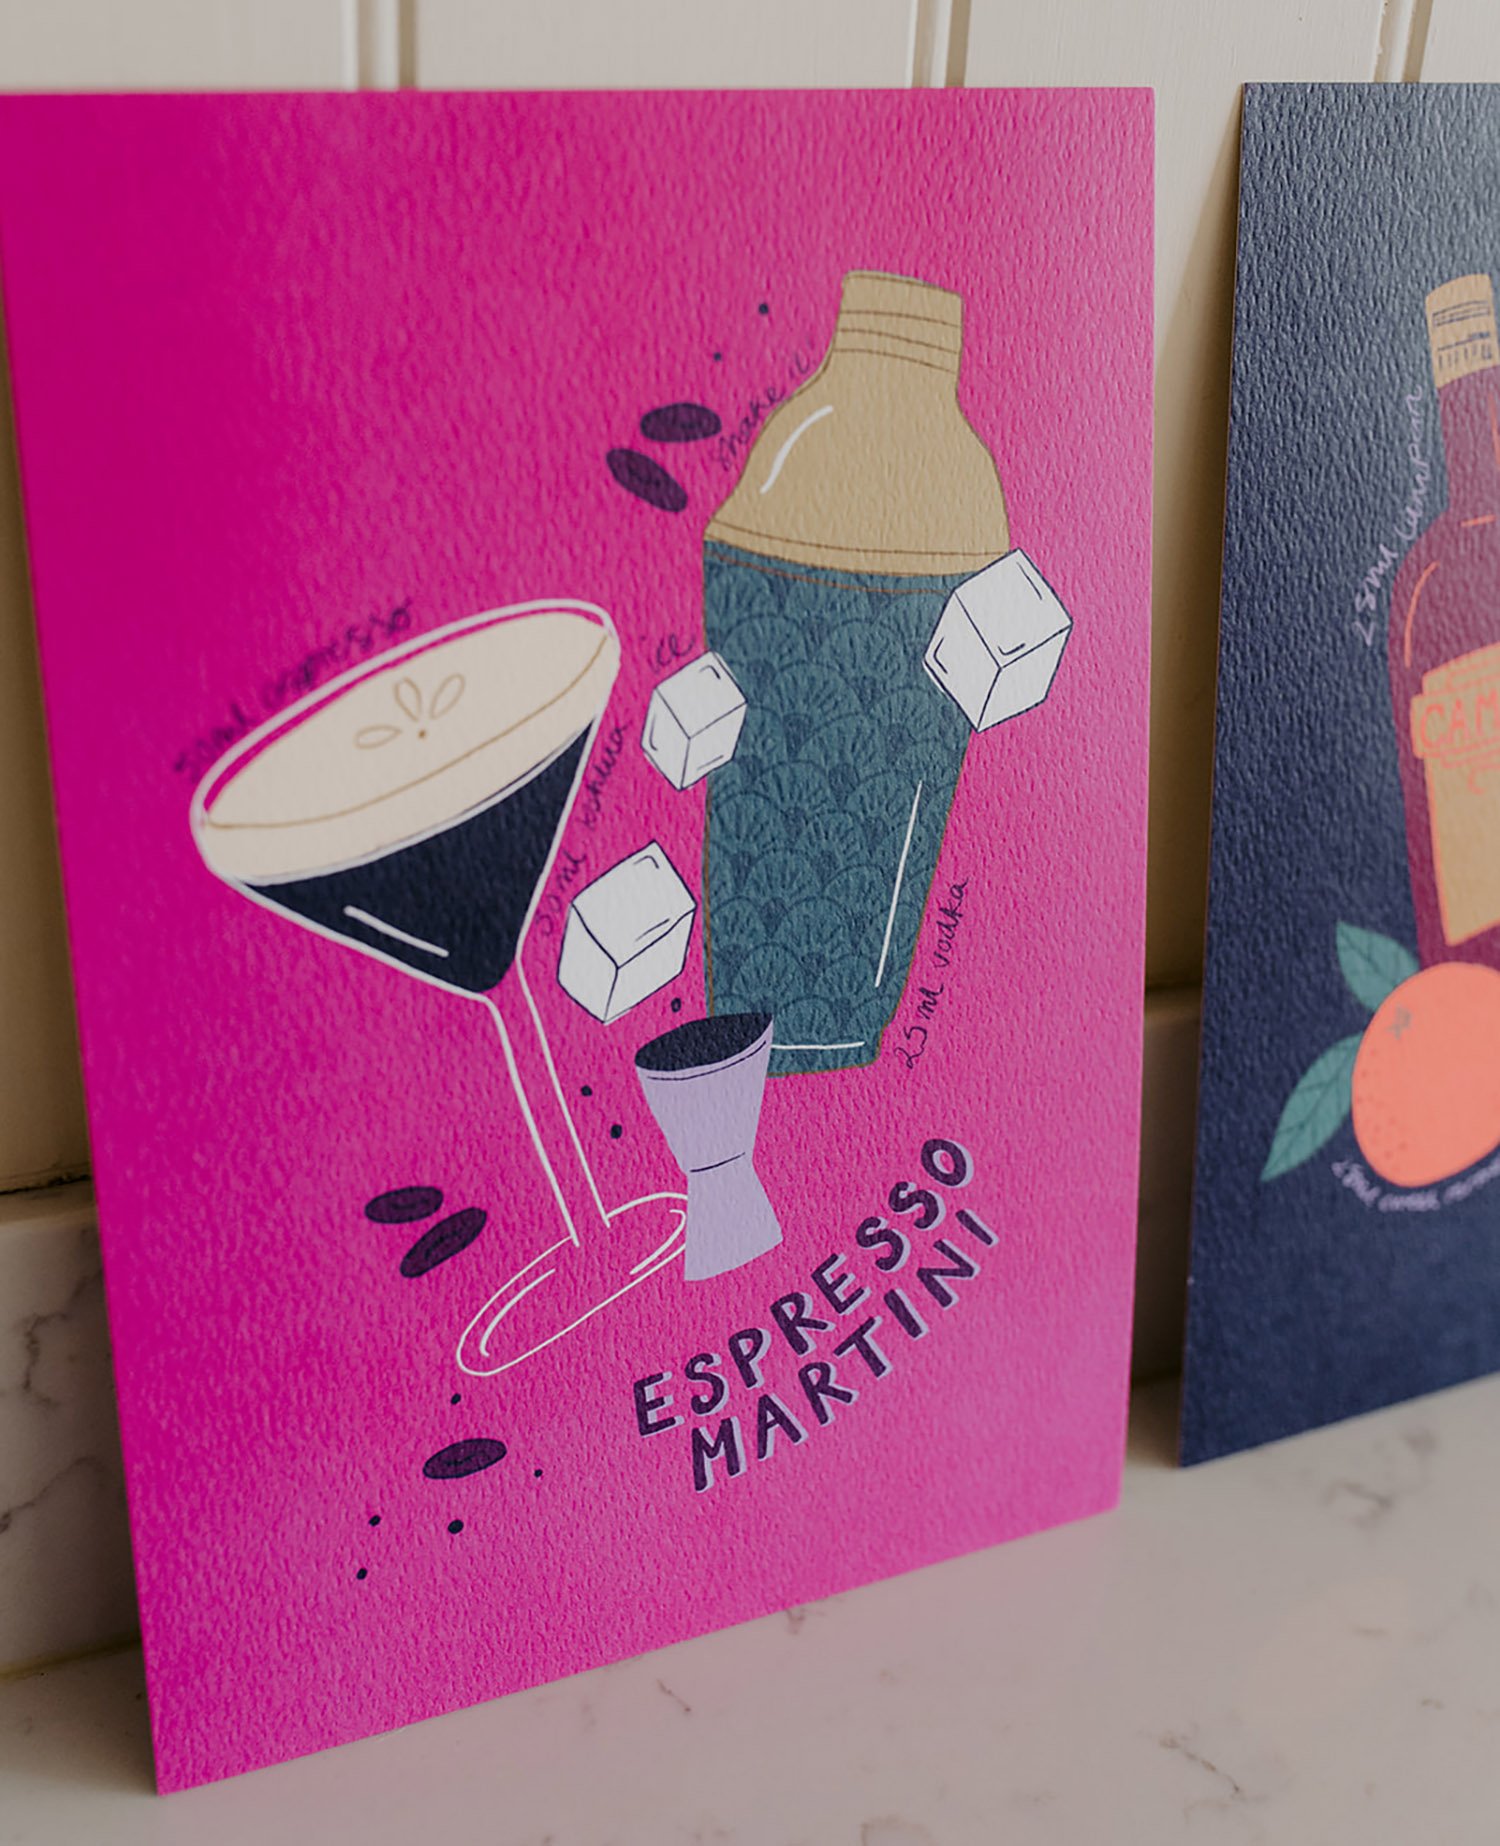 Cocktail Art Prints - Espresso Martini, A5